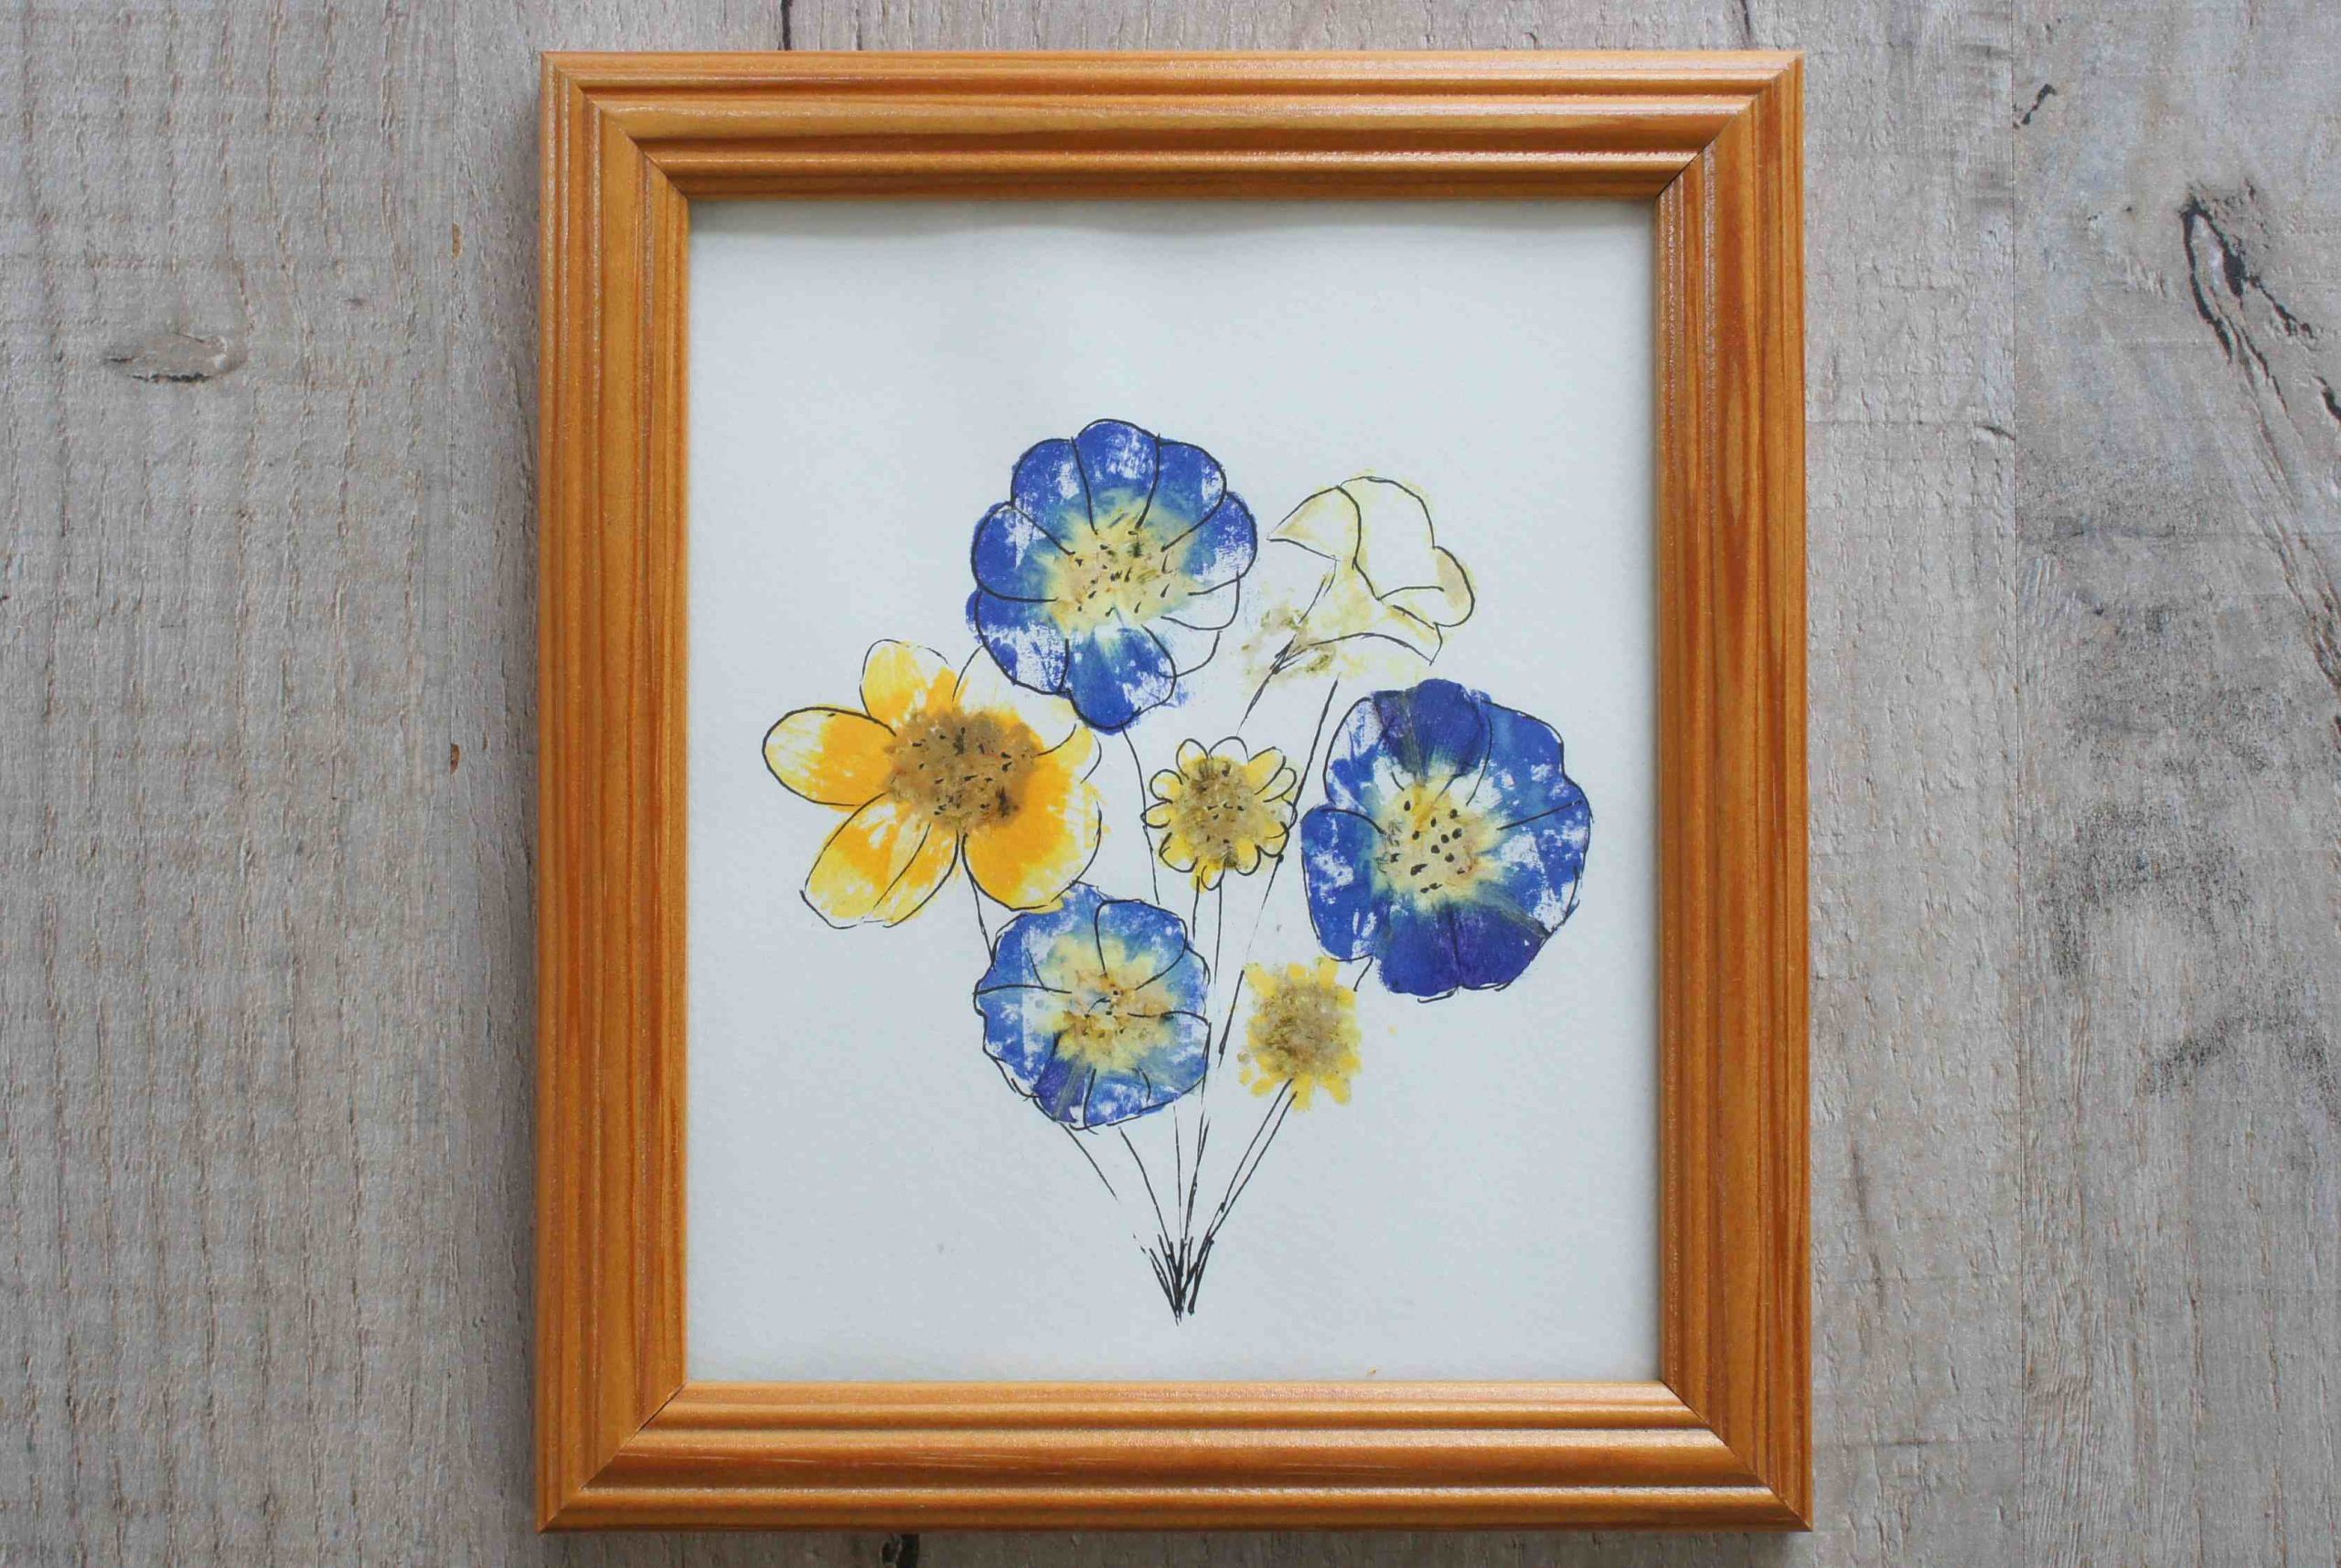 flower art in frame from flower pounding